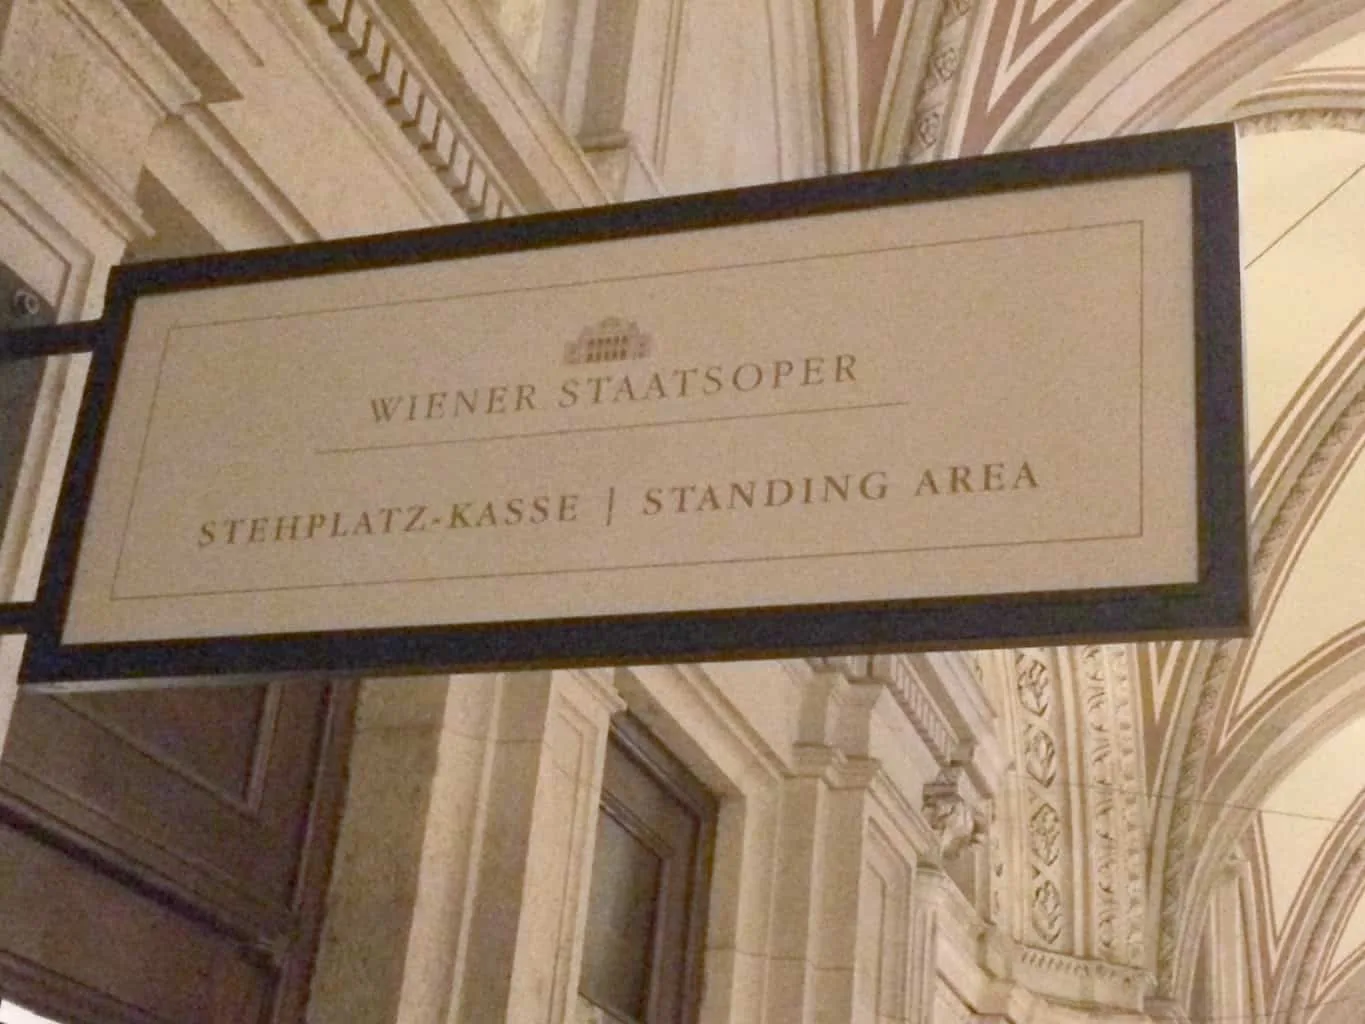 tephplatz Kasse Standing Area, Wiener Staatsoper, Vienna Opera House